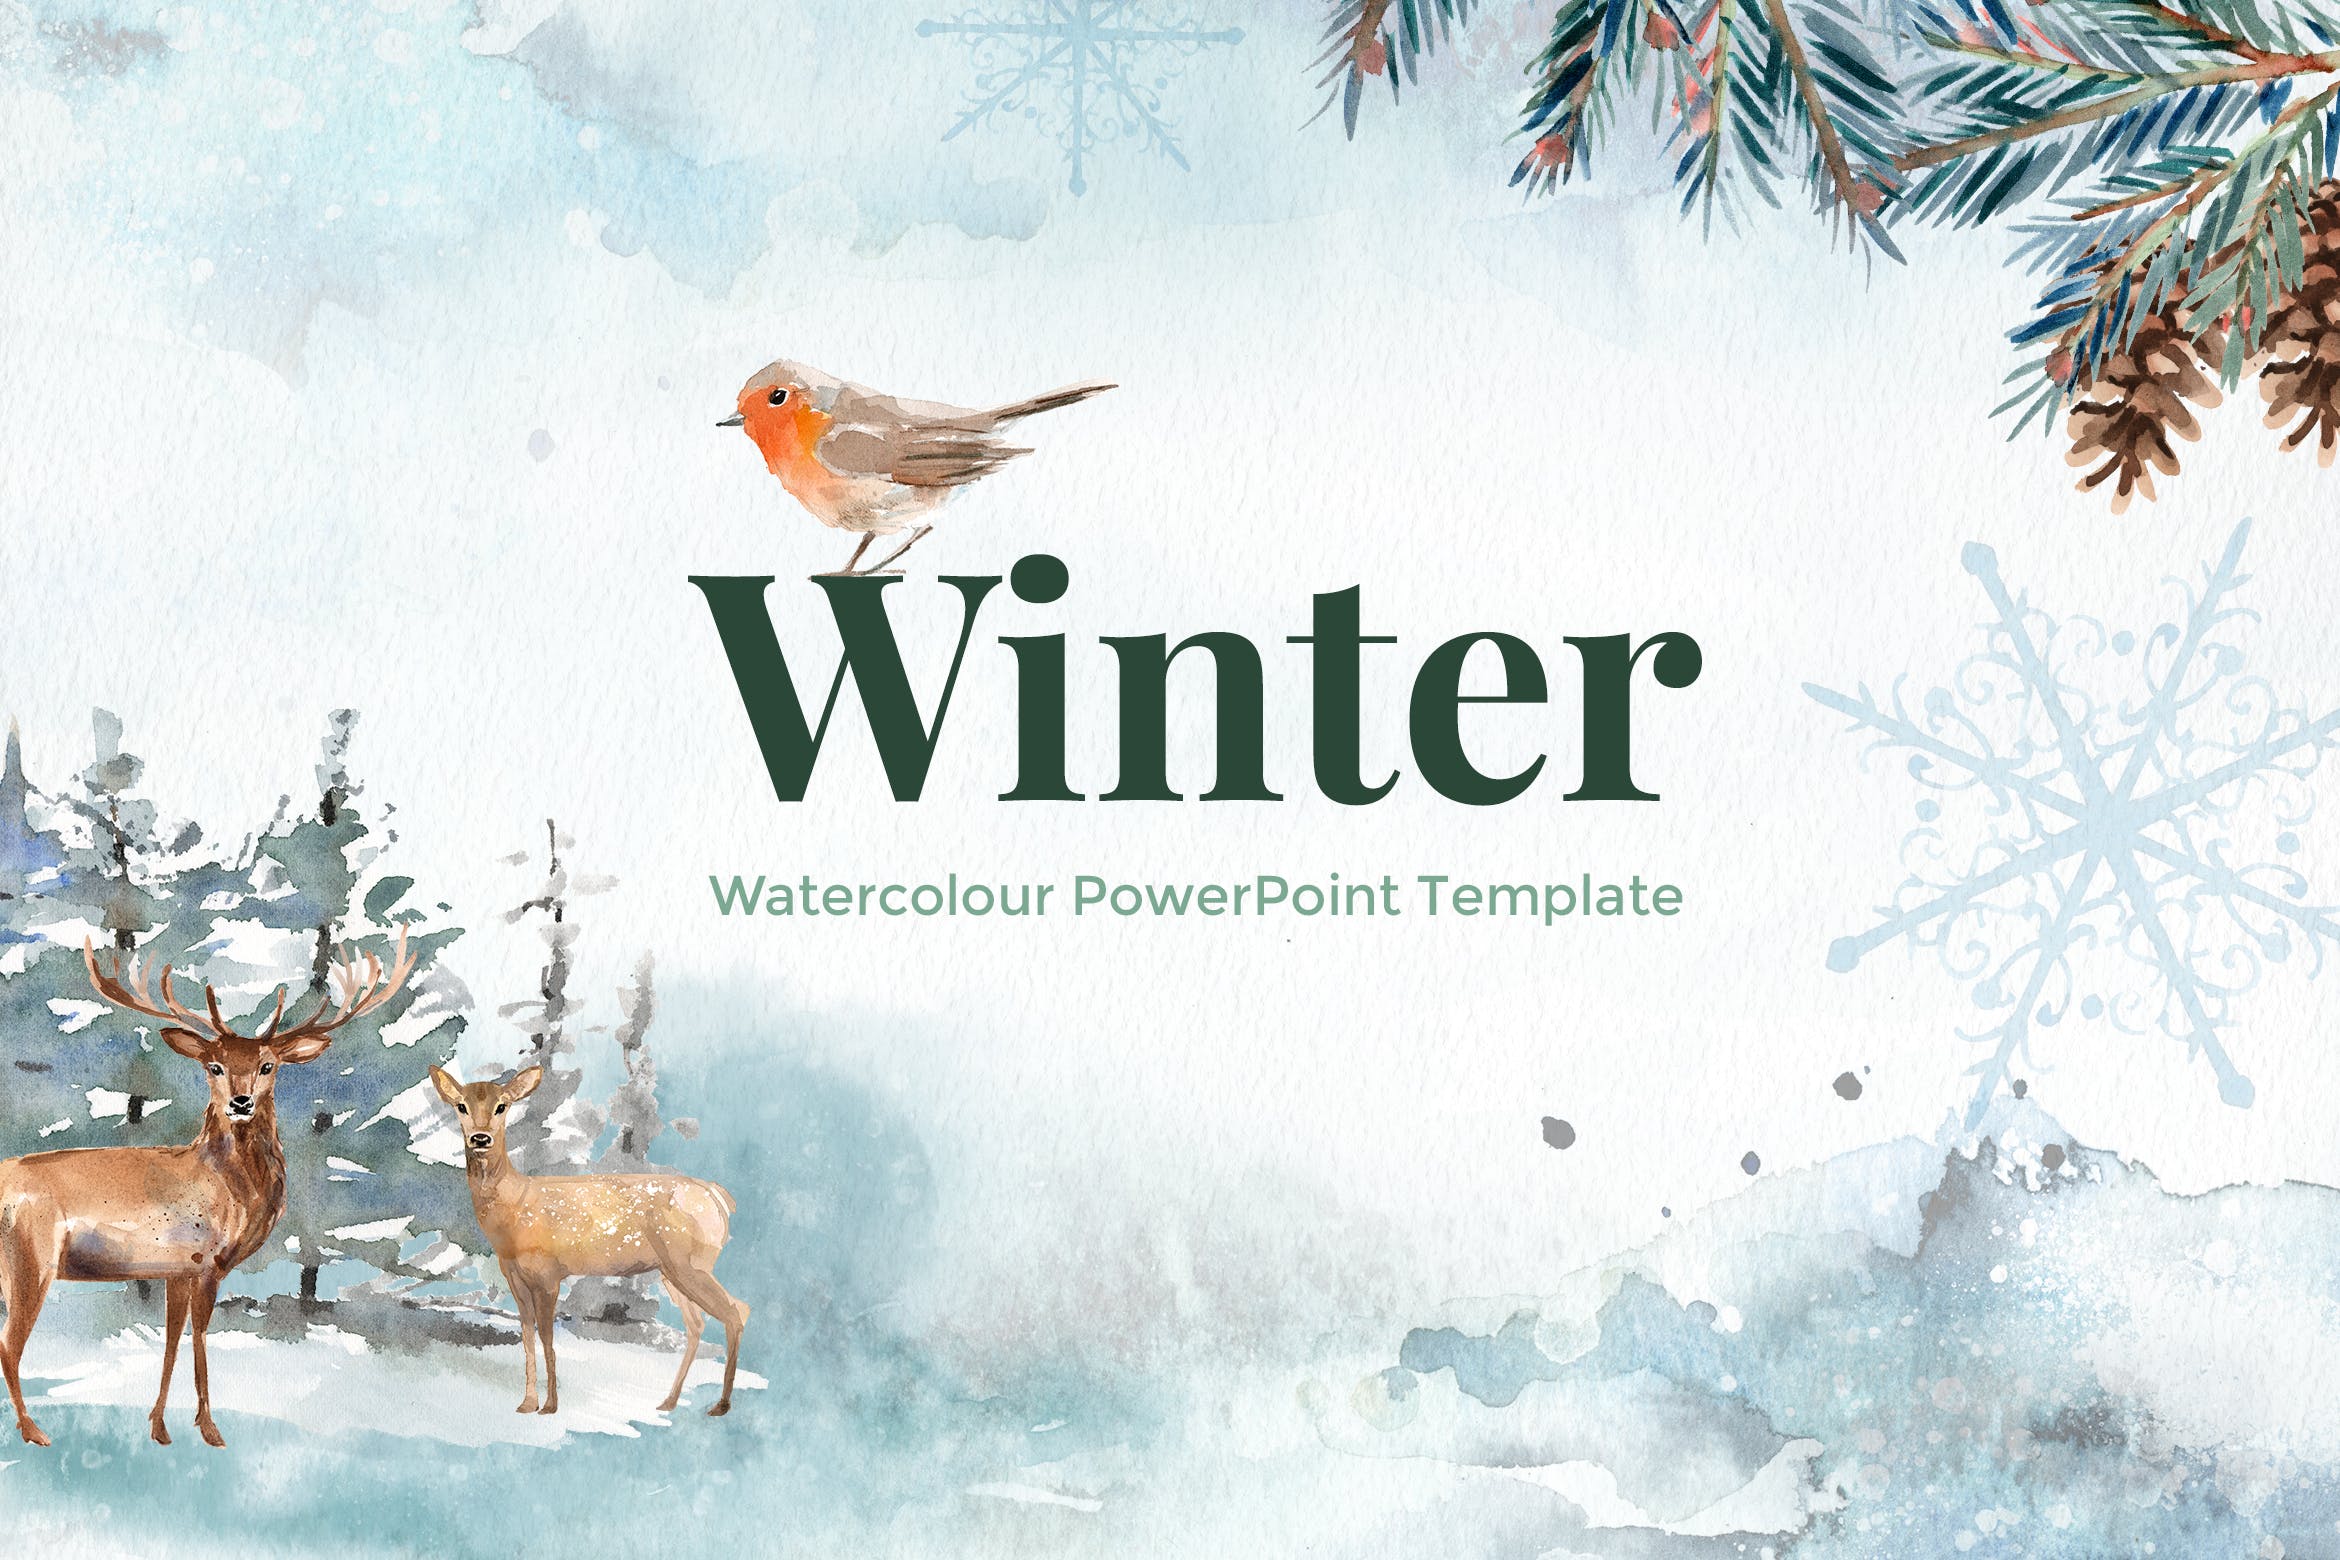 冬季水彩设计风格素材库精选PPT模板下载 Winter – Watercolour PowerPoint Template插图